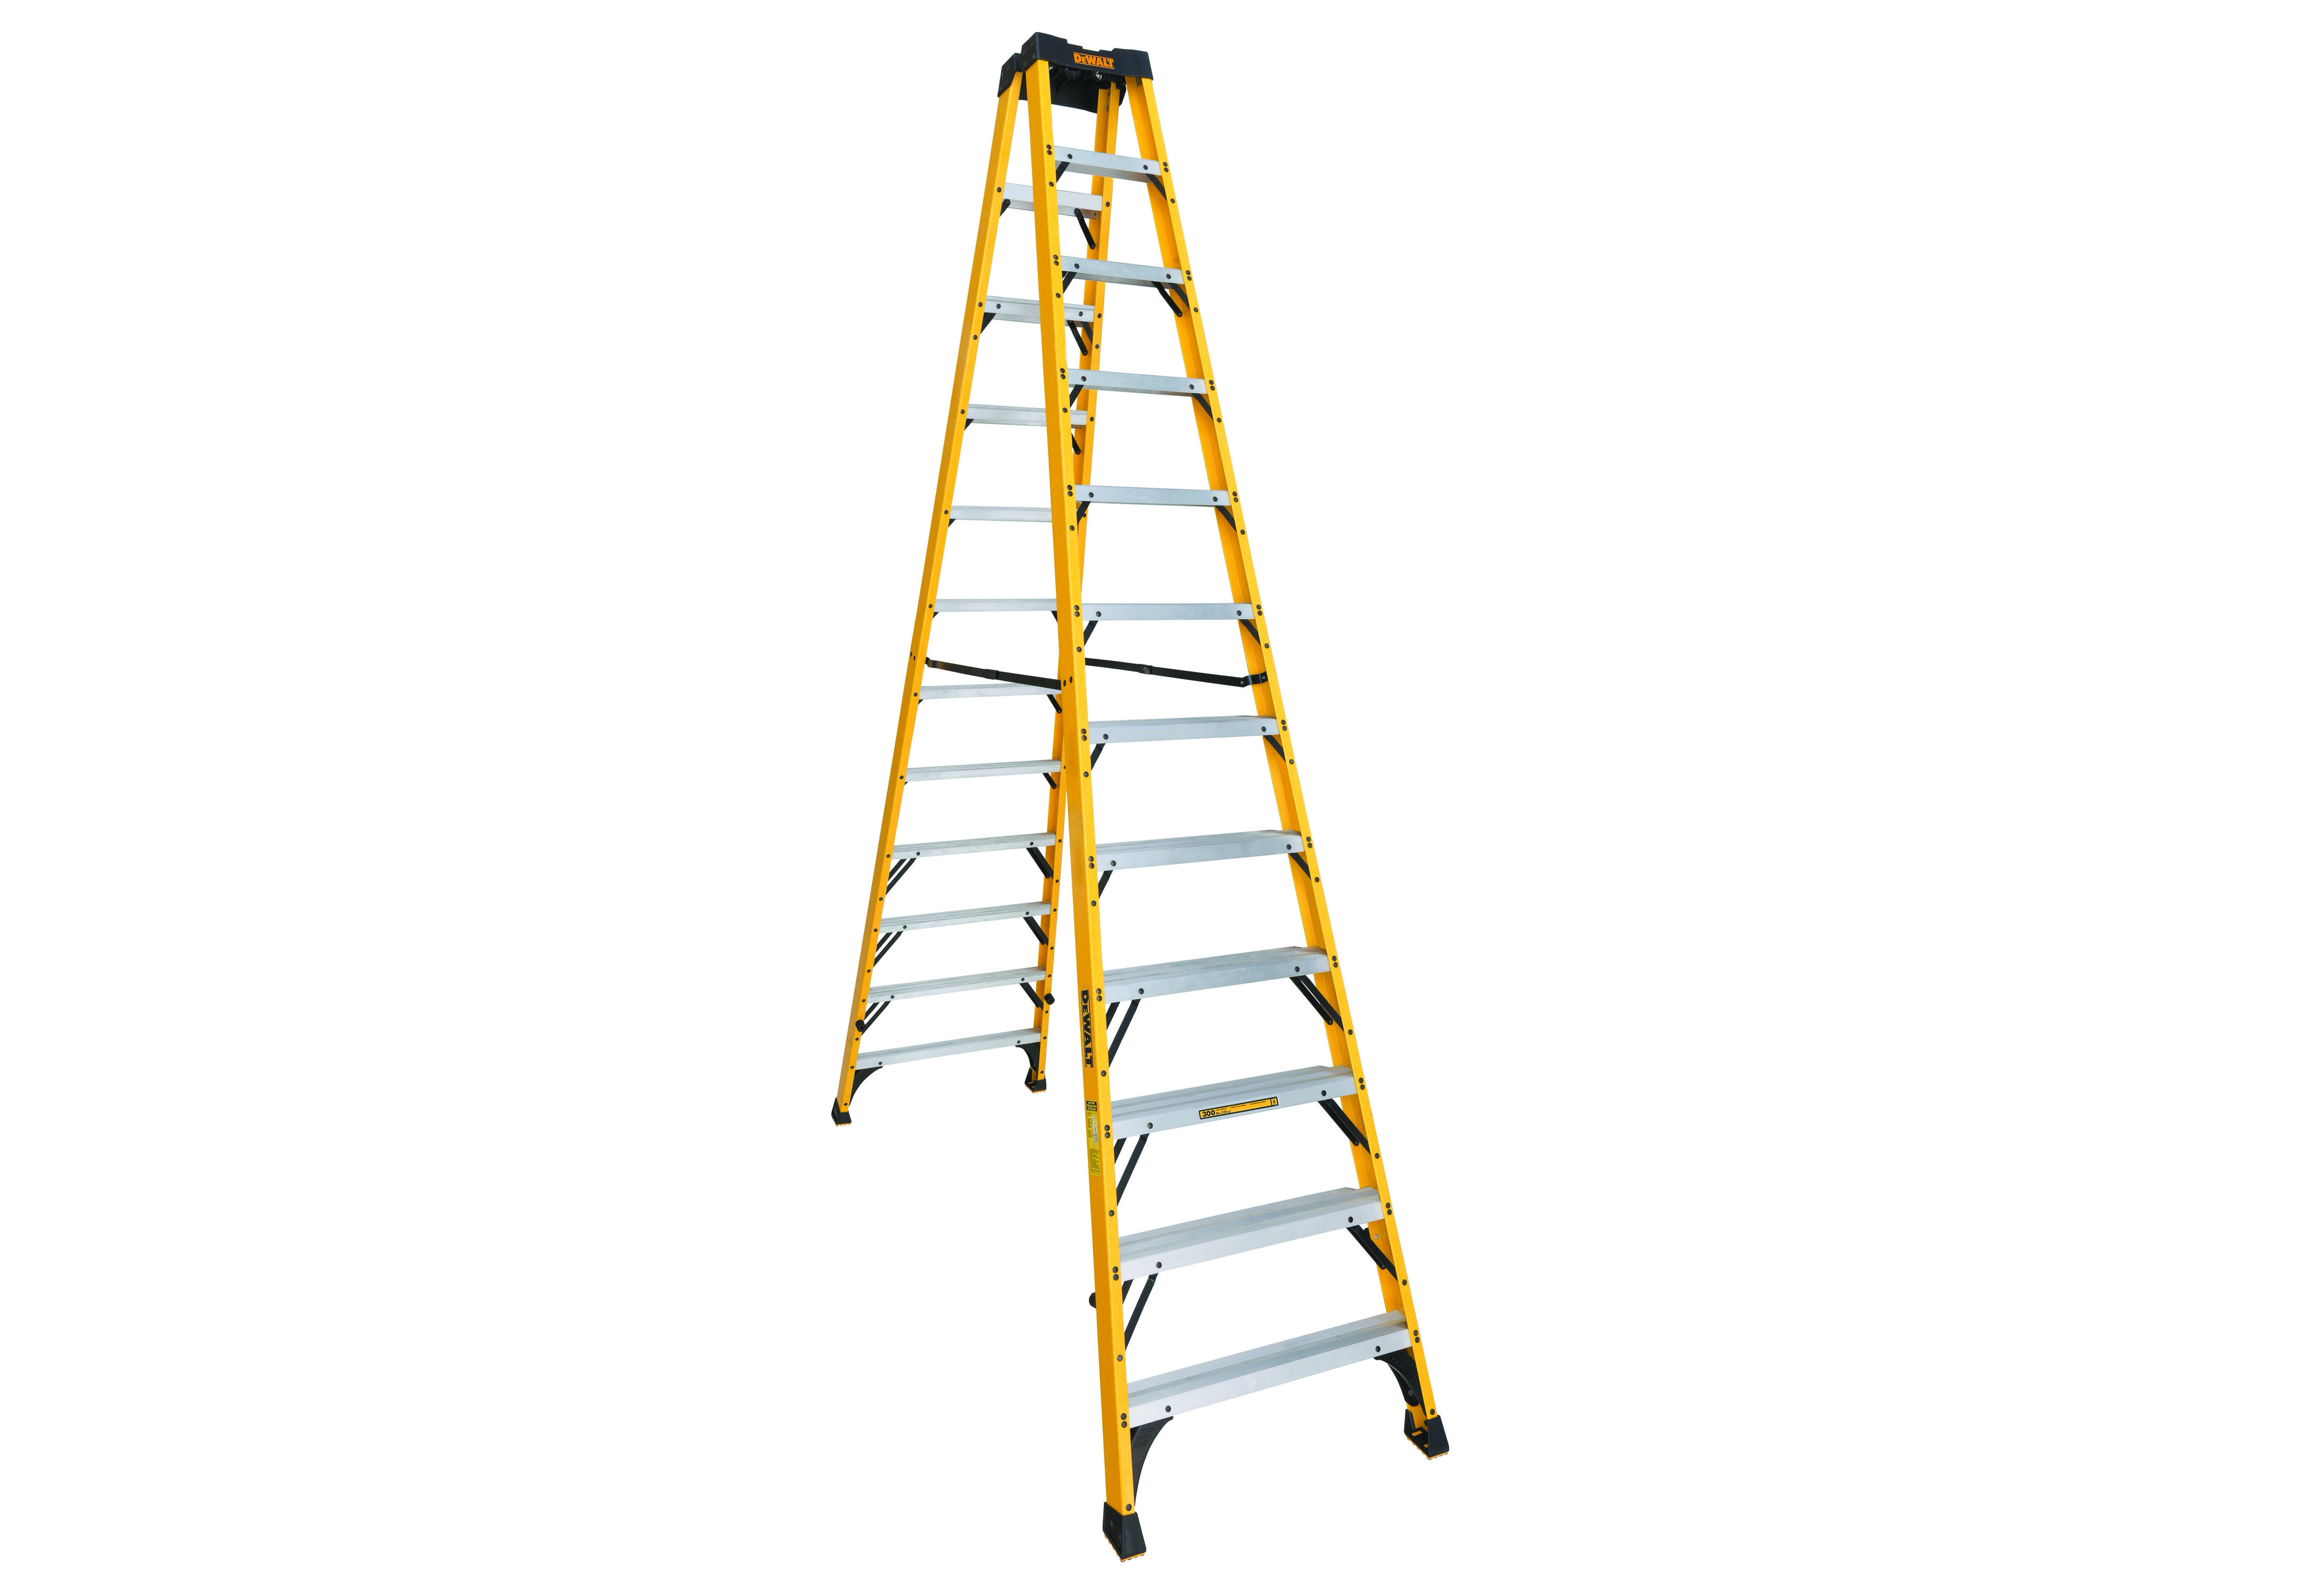 DeWalt ladder